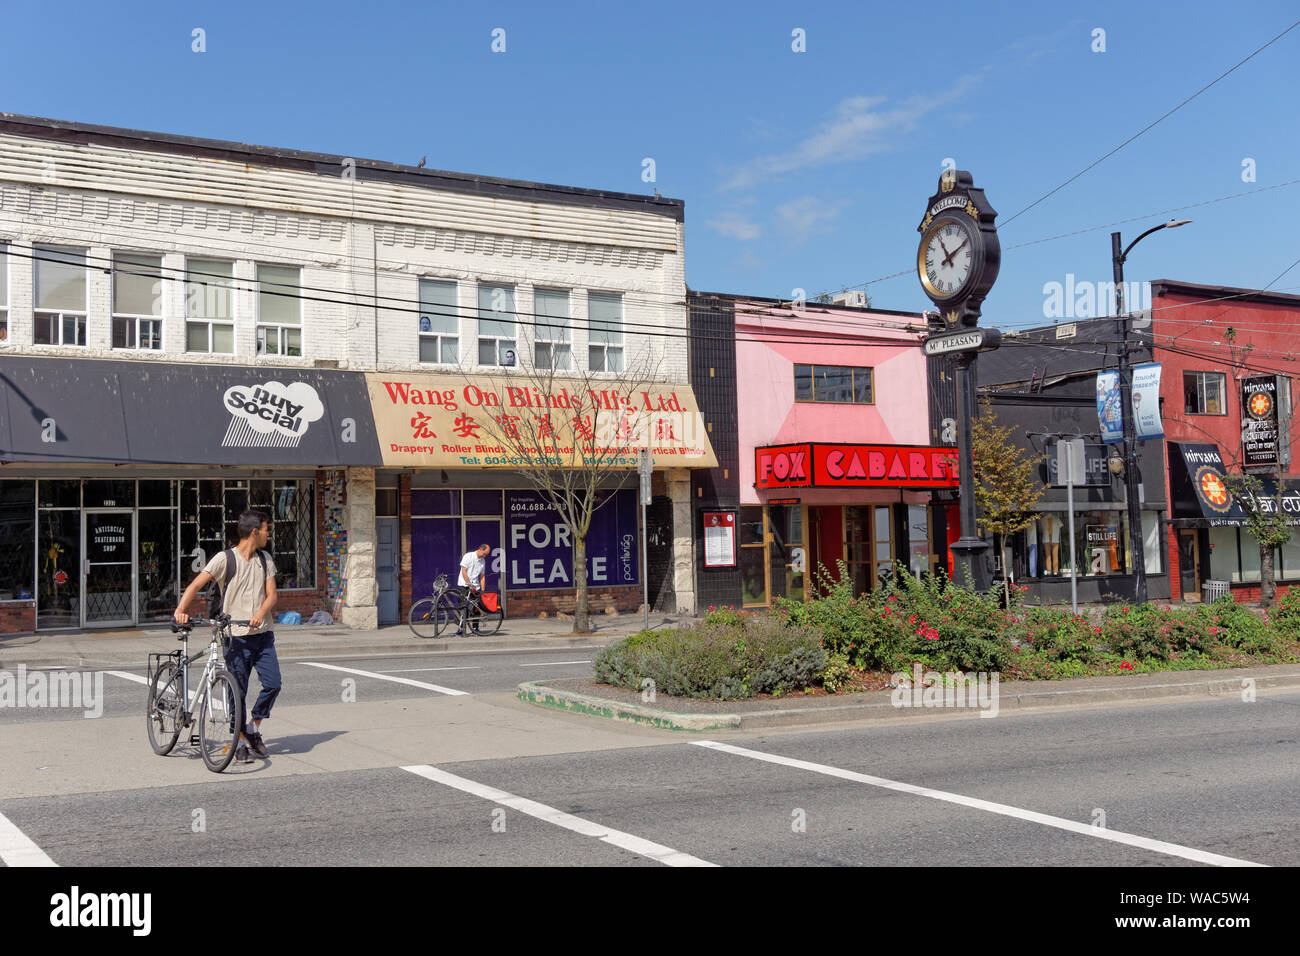 Historische Gebäude und Mount Pleasant Willkommen auf der Main Street in der Mount Pleasant Viertel von Vancouver, BC, Kanada Stockfoto